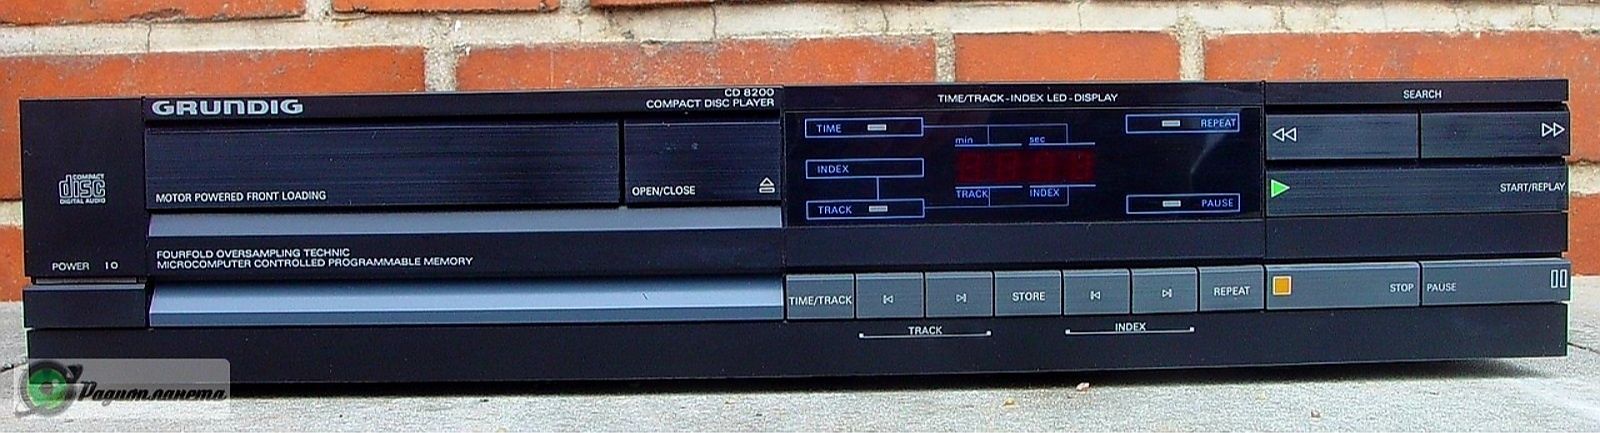 GUNDIG CD 8200 Проигрыватель компакт дисков.Бельгия 1982г.